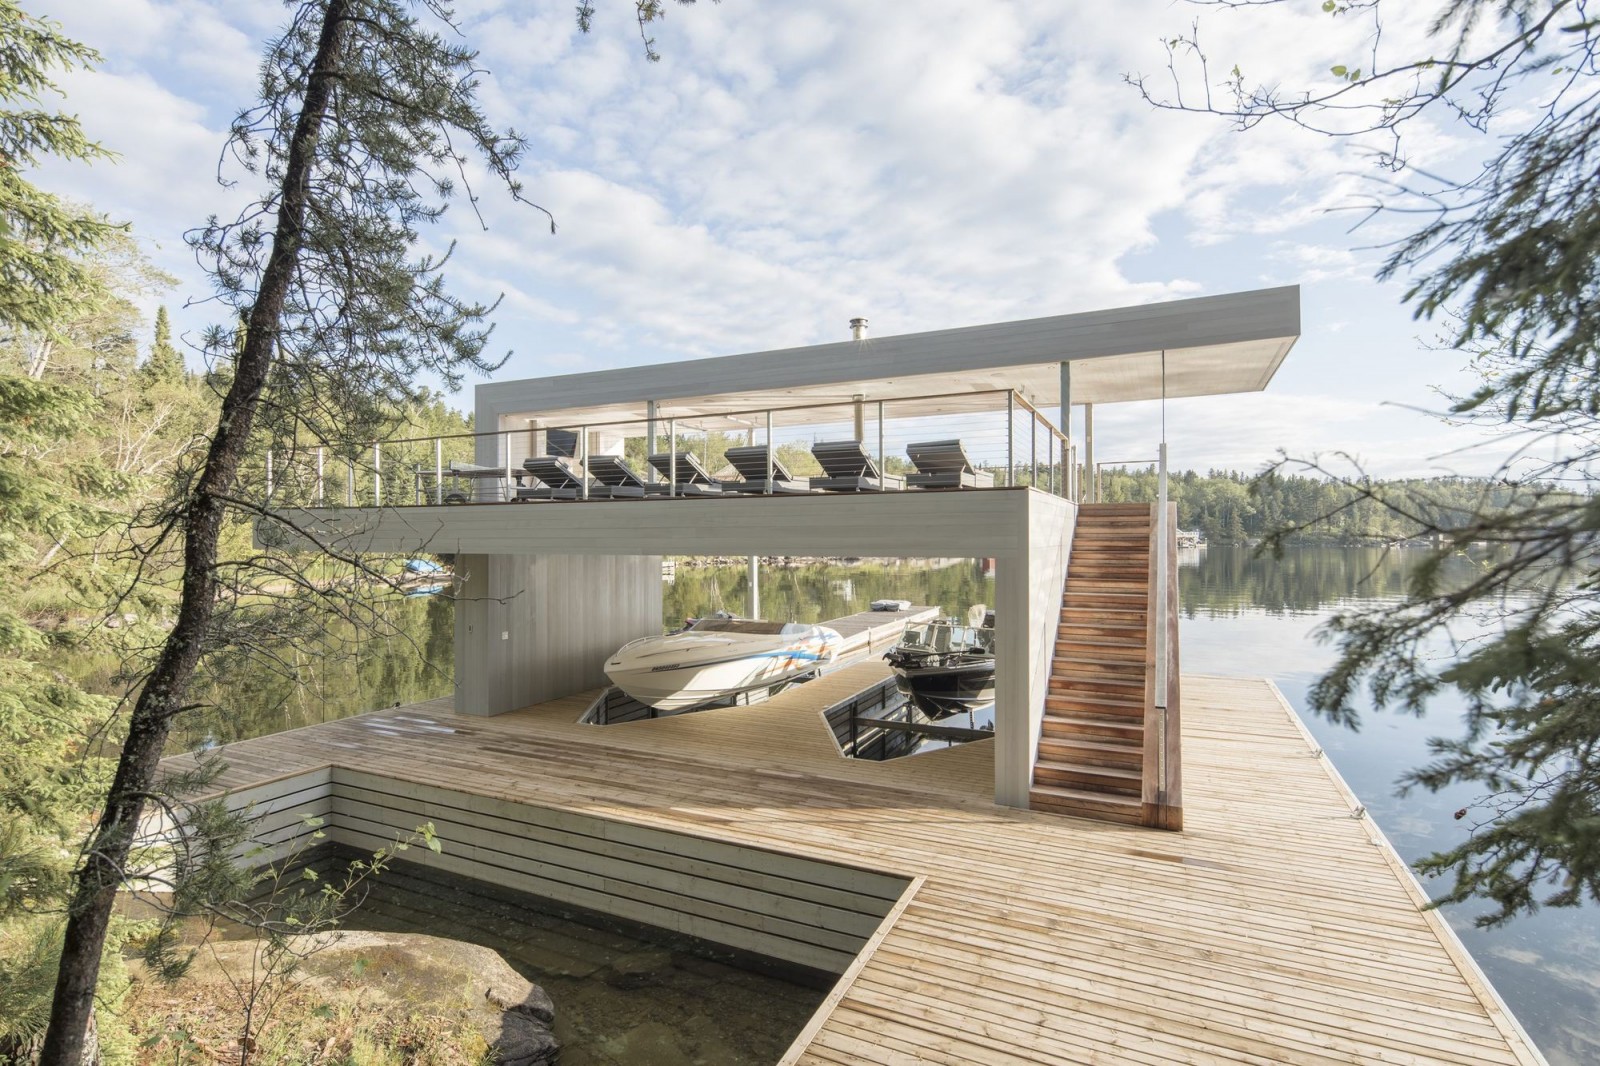 Boathouse / Cibinel Architecture